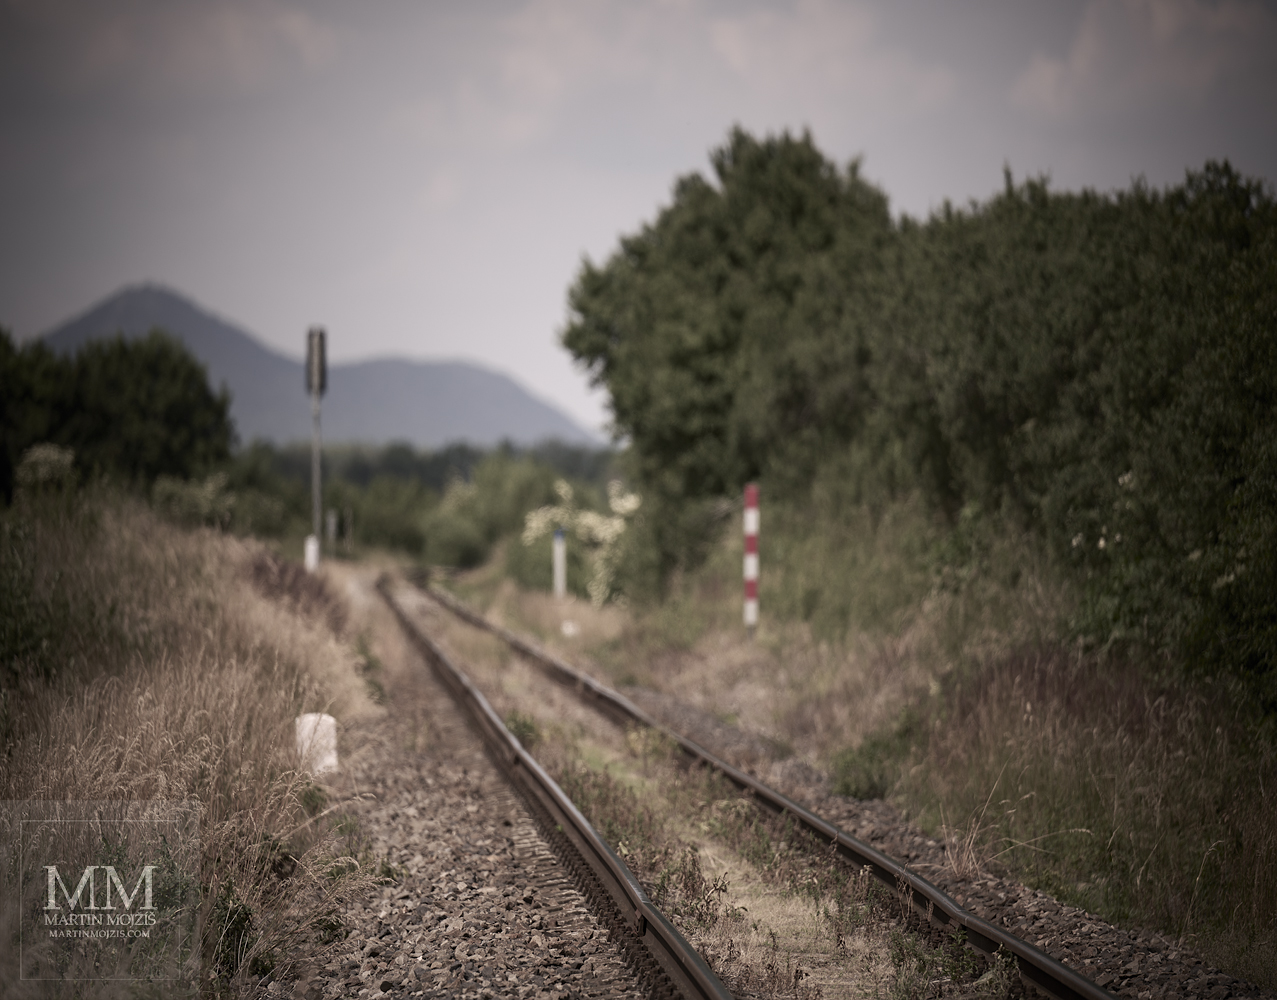 Železniční trať v krajině. Umělecká fotografie s názvem CESTA K SEVERU. Fotograf Martin Mojžíš.